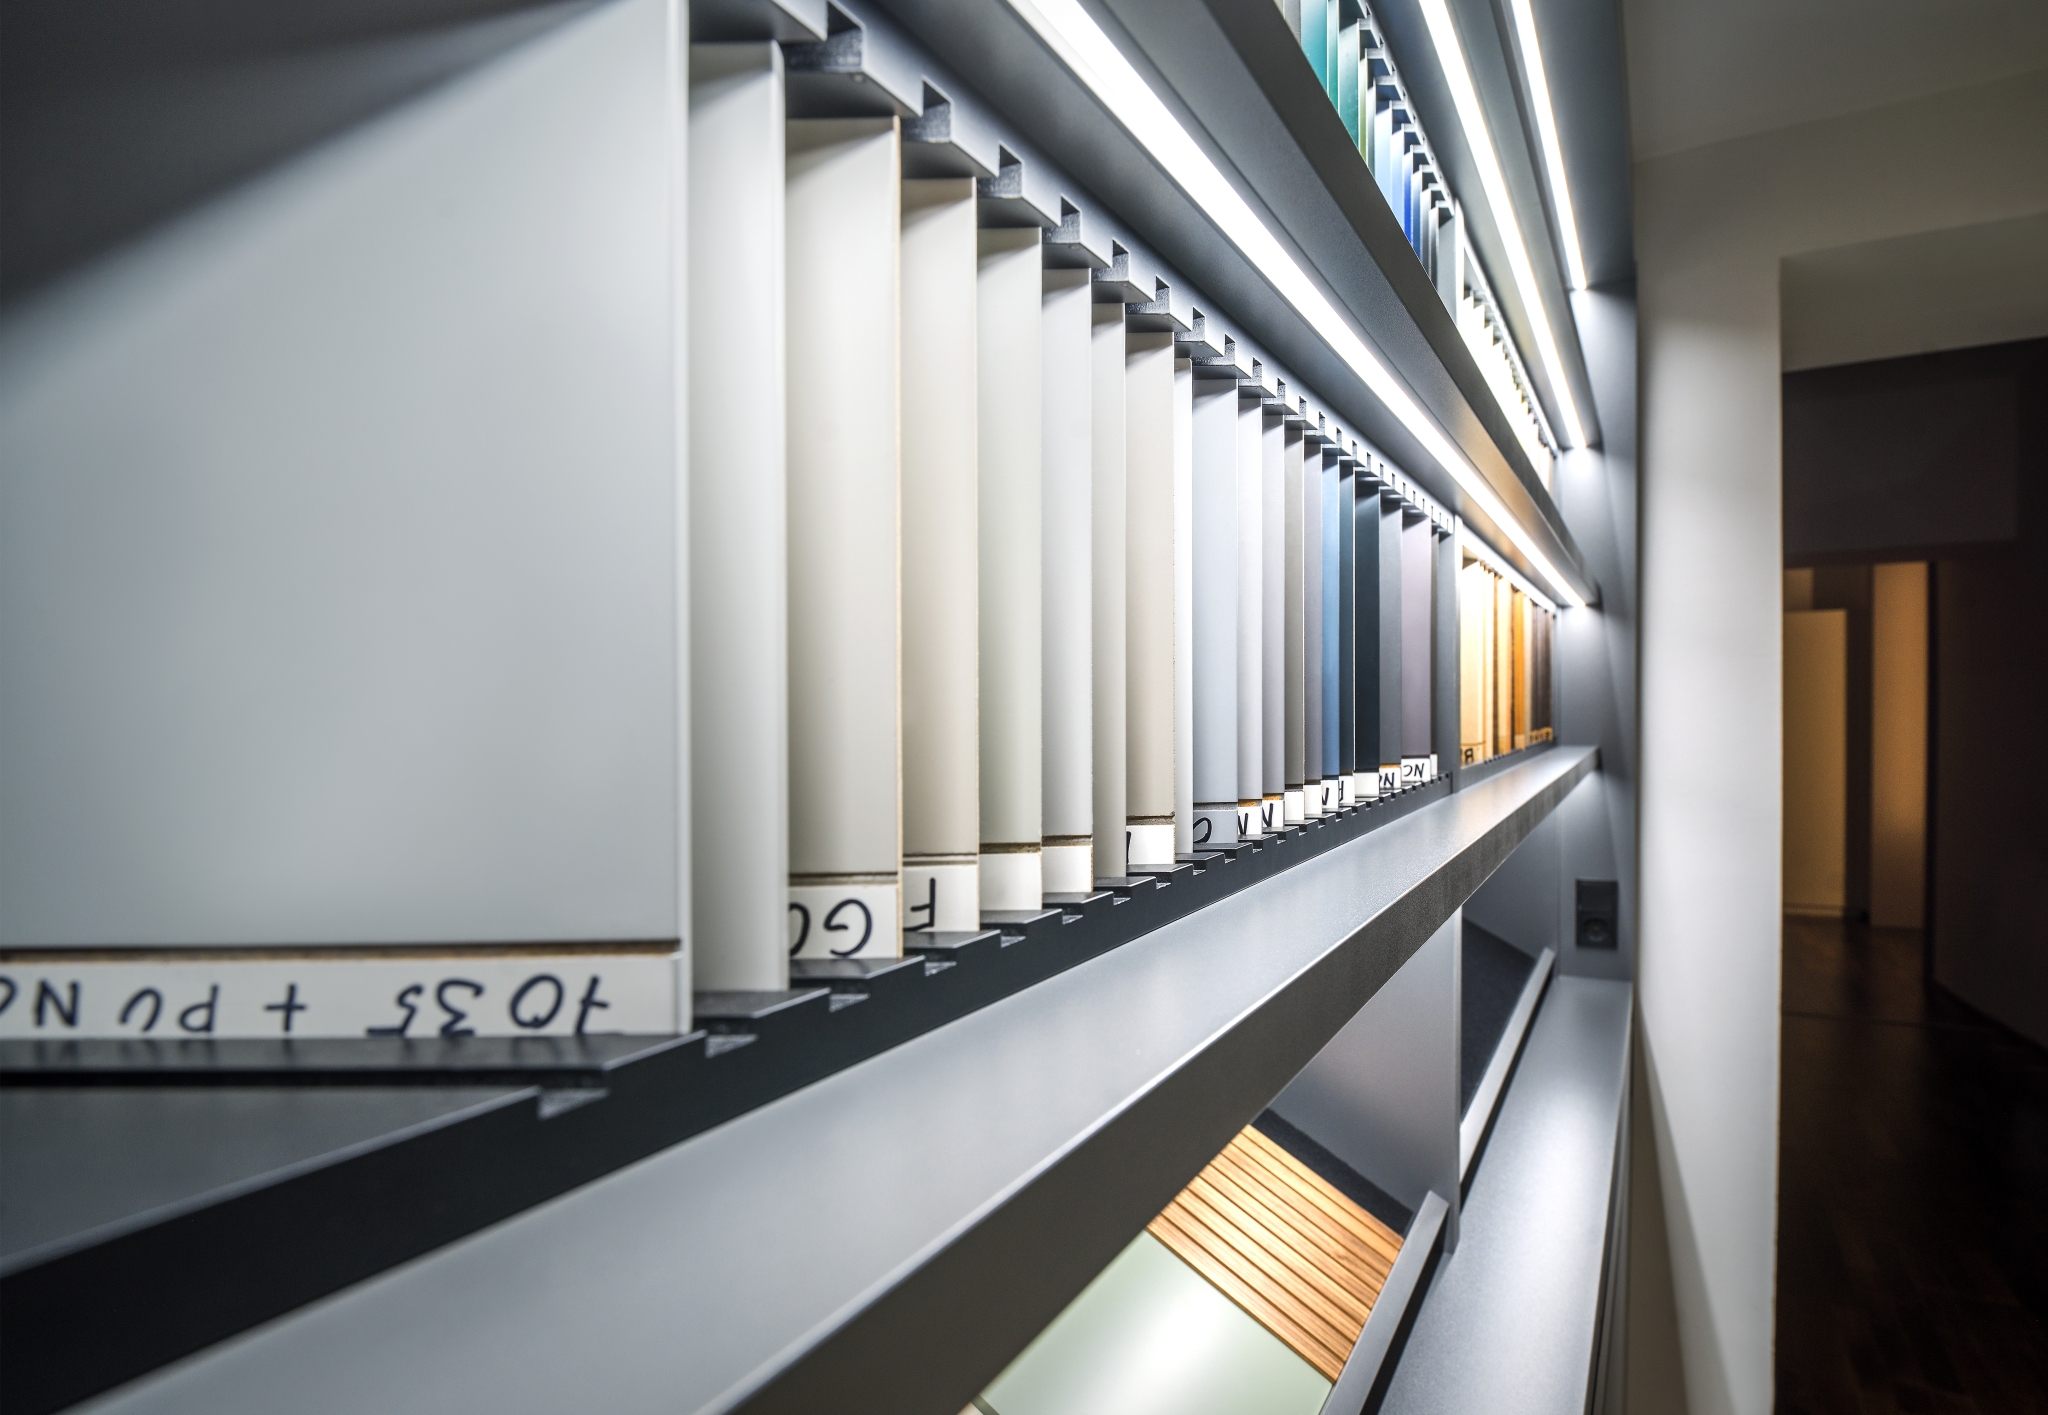 Eine moderne Bibliothek mit abstraktem Design und einem Korridor mit auf einzigartigen, abgewinkelten Regalen aufgereihten Büchern, die zu einer futuristischen Erkundung der Literatur einladen.